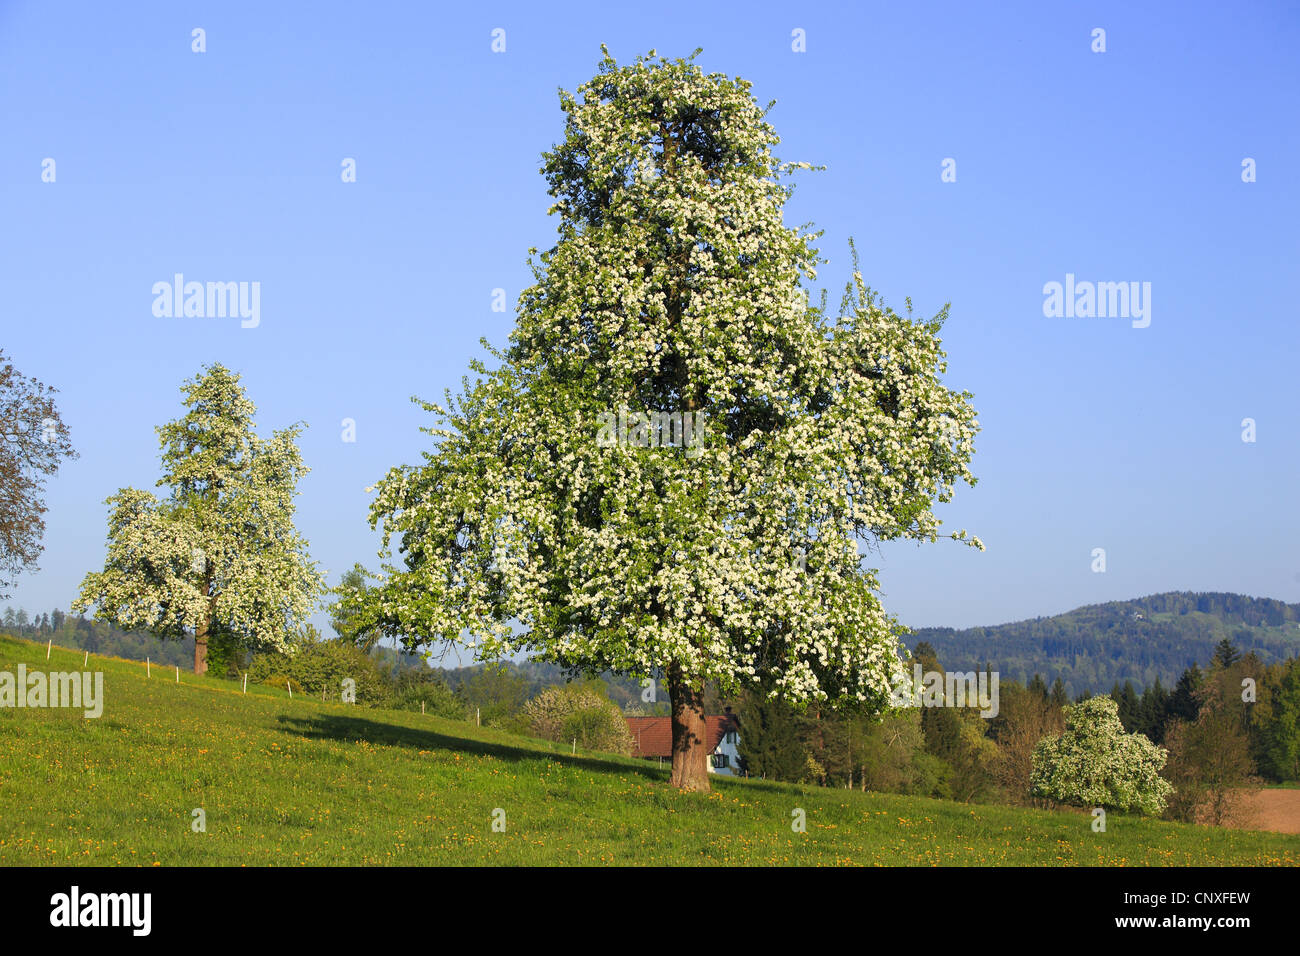 gemeinsamen Birne, Birnbaum (Pyrus Communis, Pyrus Domestica), Birnenbäume stehen frei auf einer Wiese voll blühen, Schweiz Stockfoto